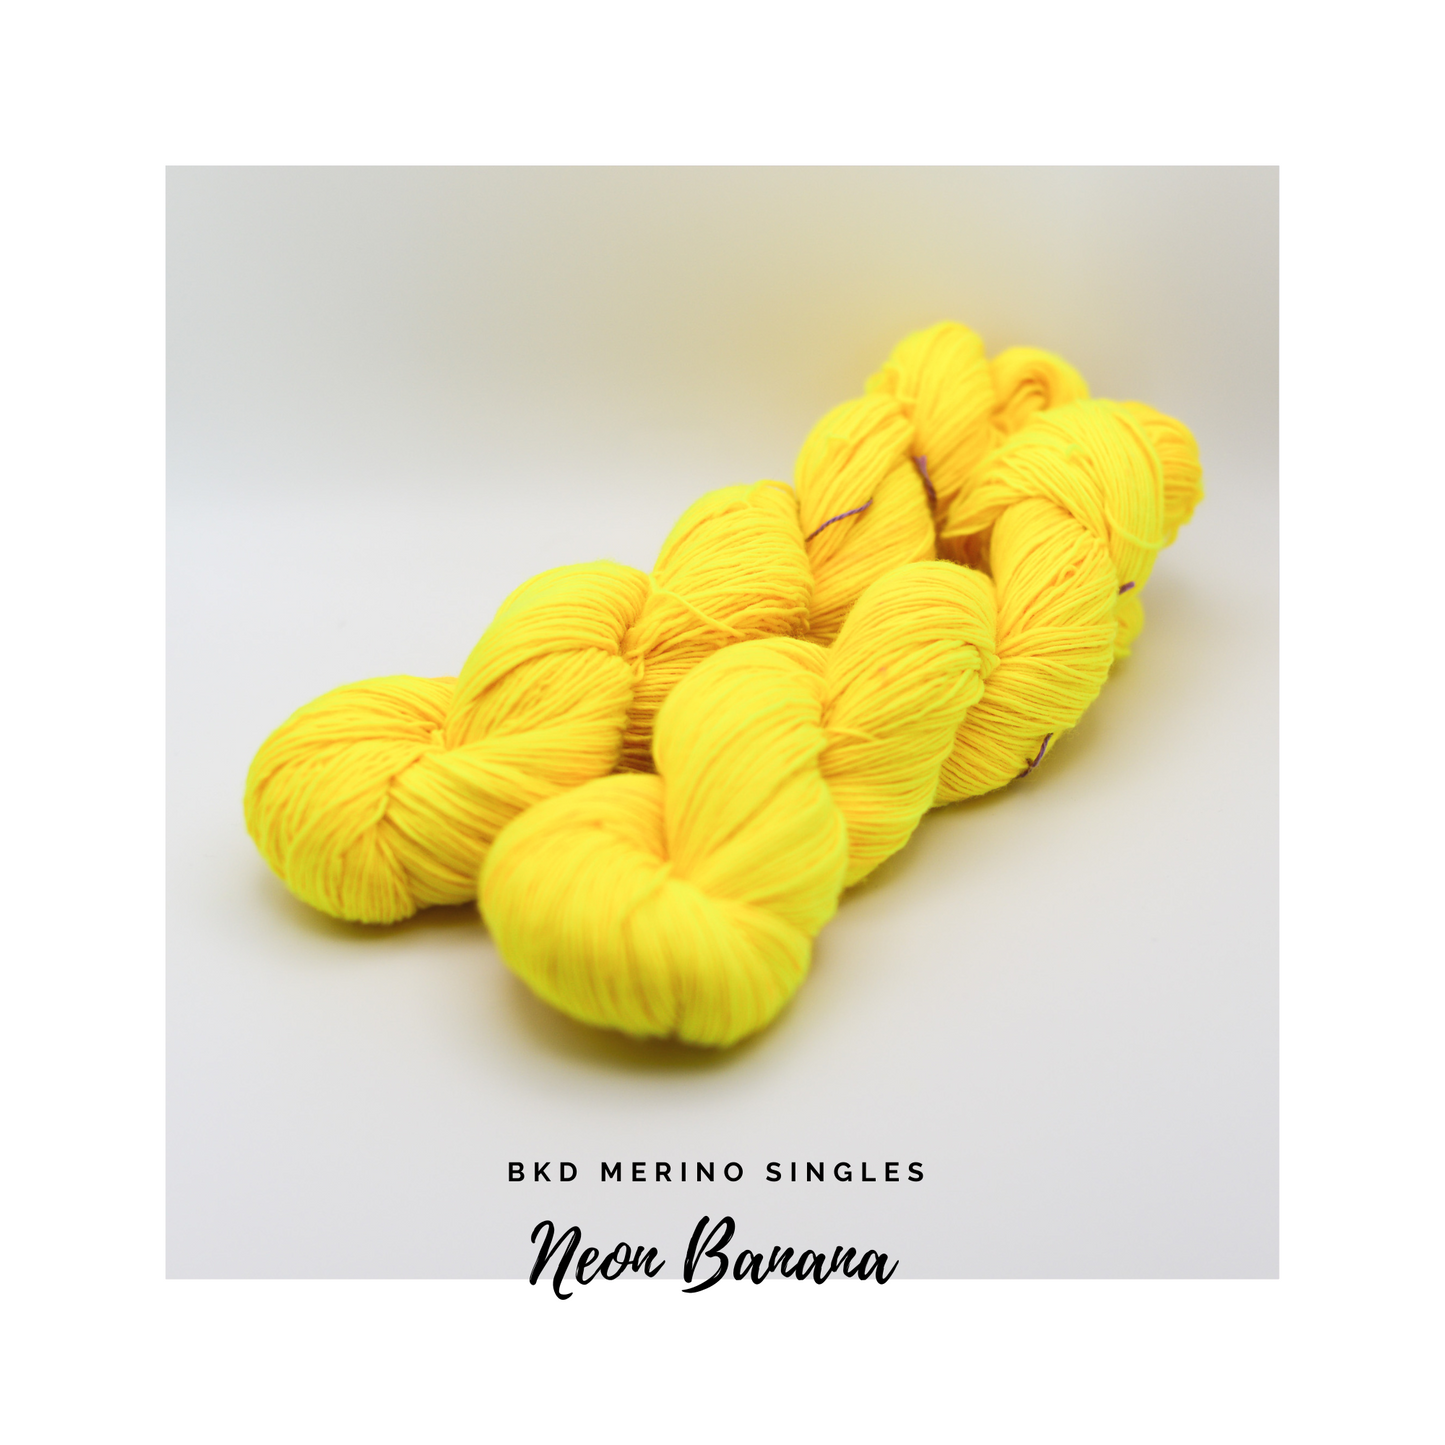 BKD Merino Singles, hand dyed yarn, BKD Yarn